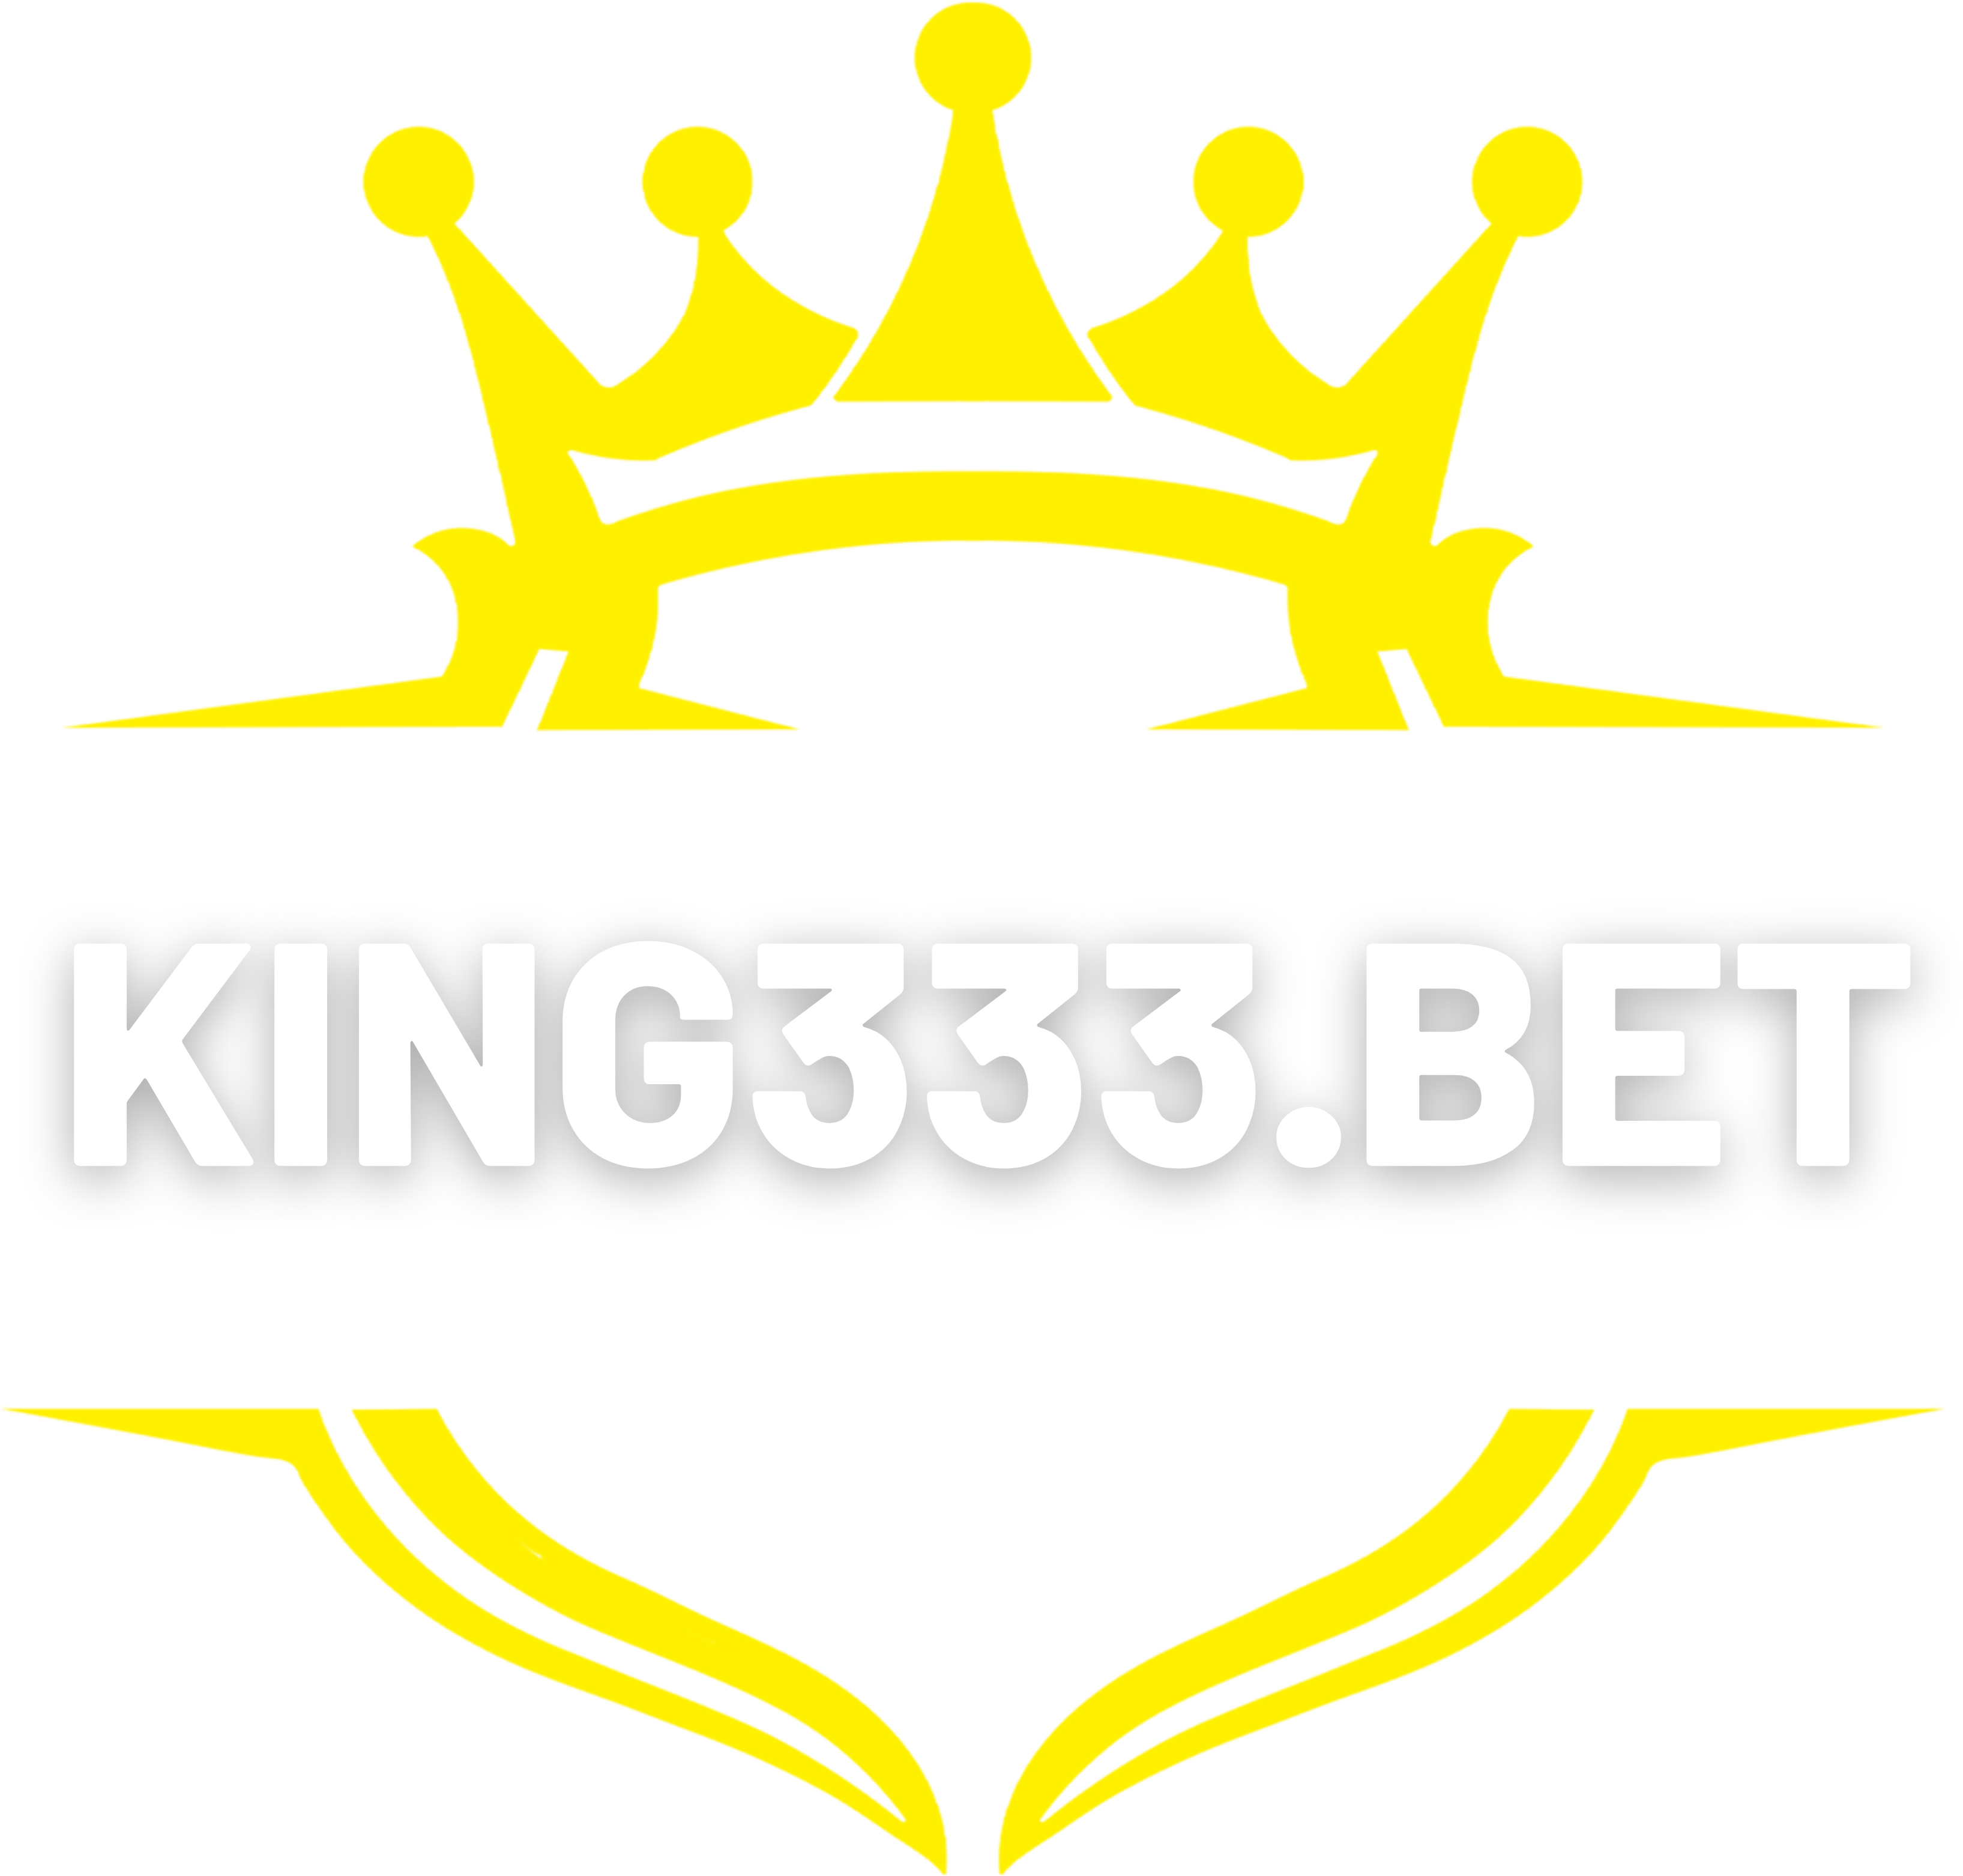 KING333.BET